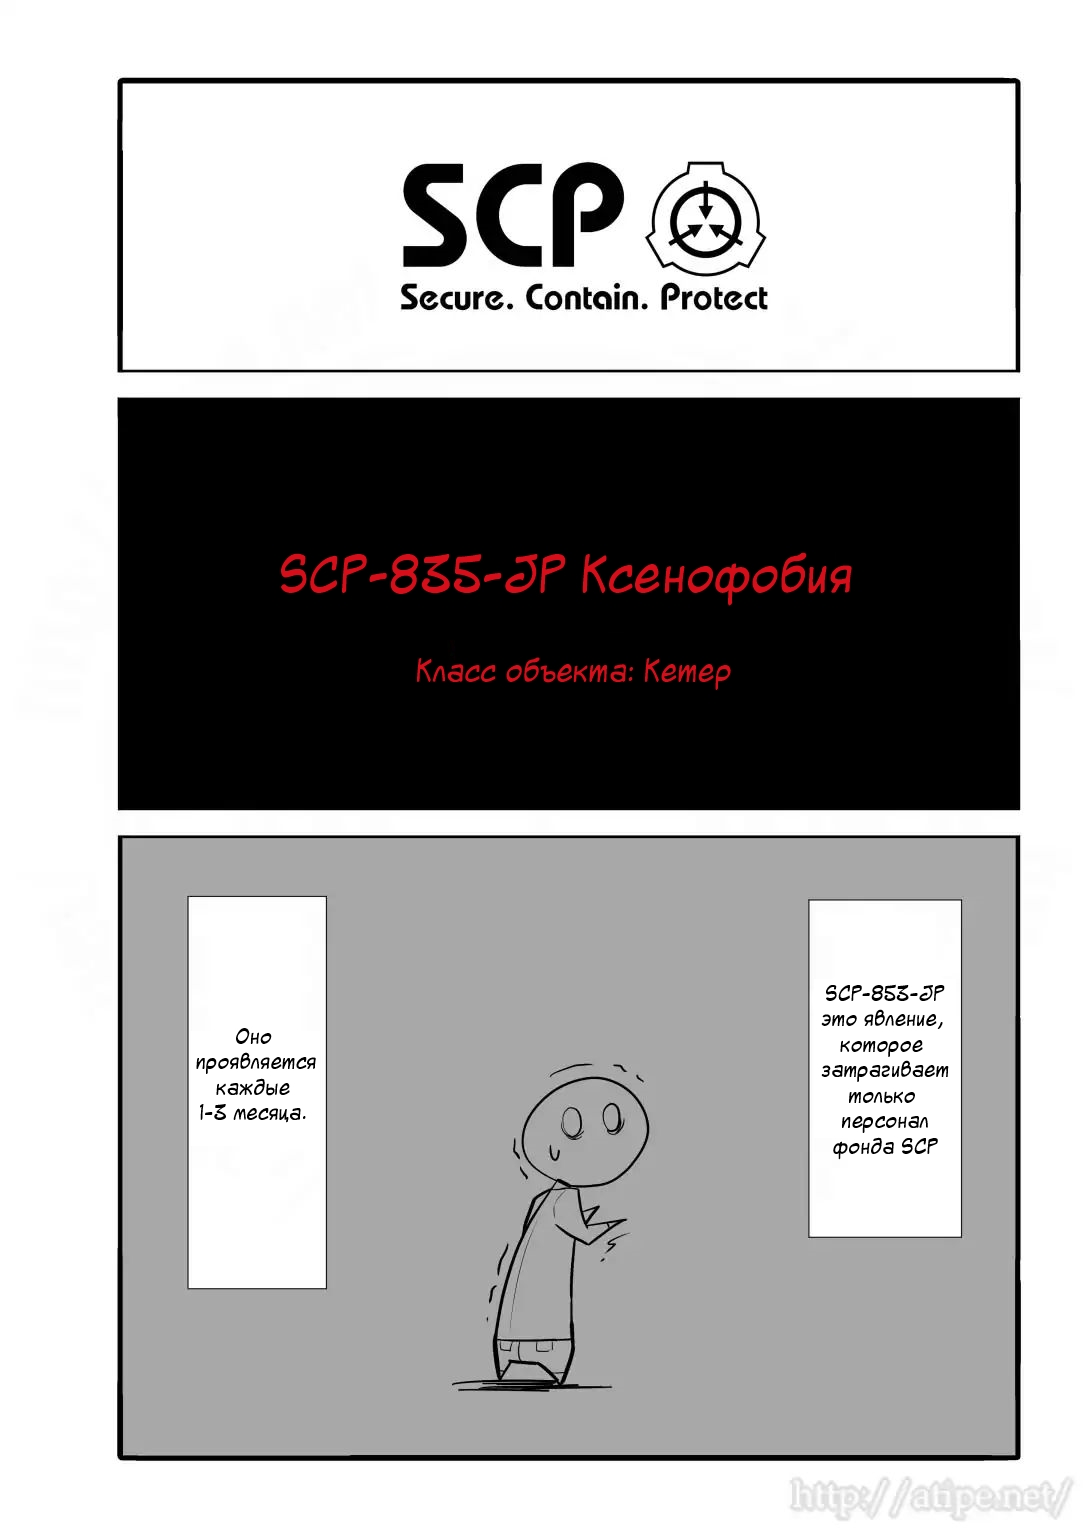 Упрощенный SCP 1 - 19 SCP-835-JP